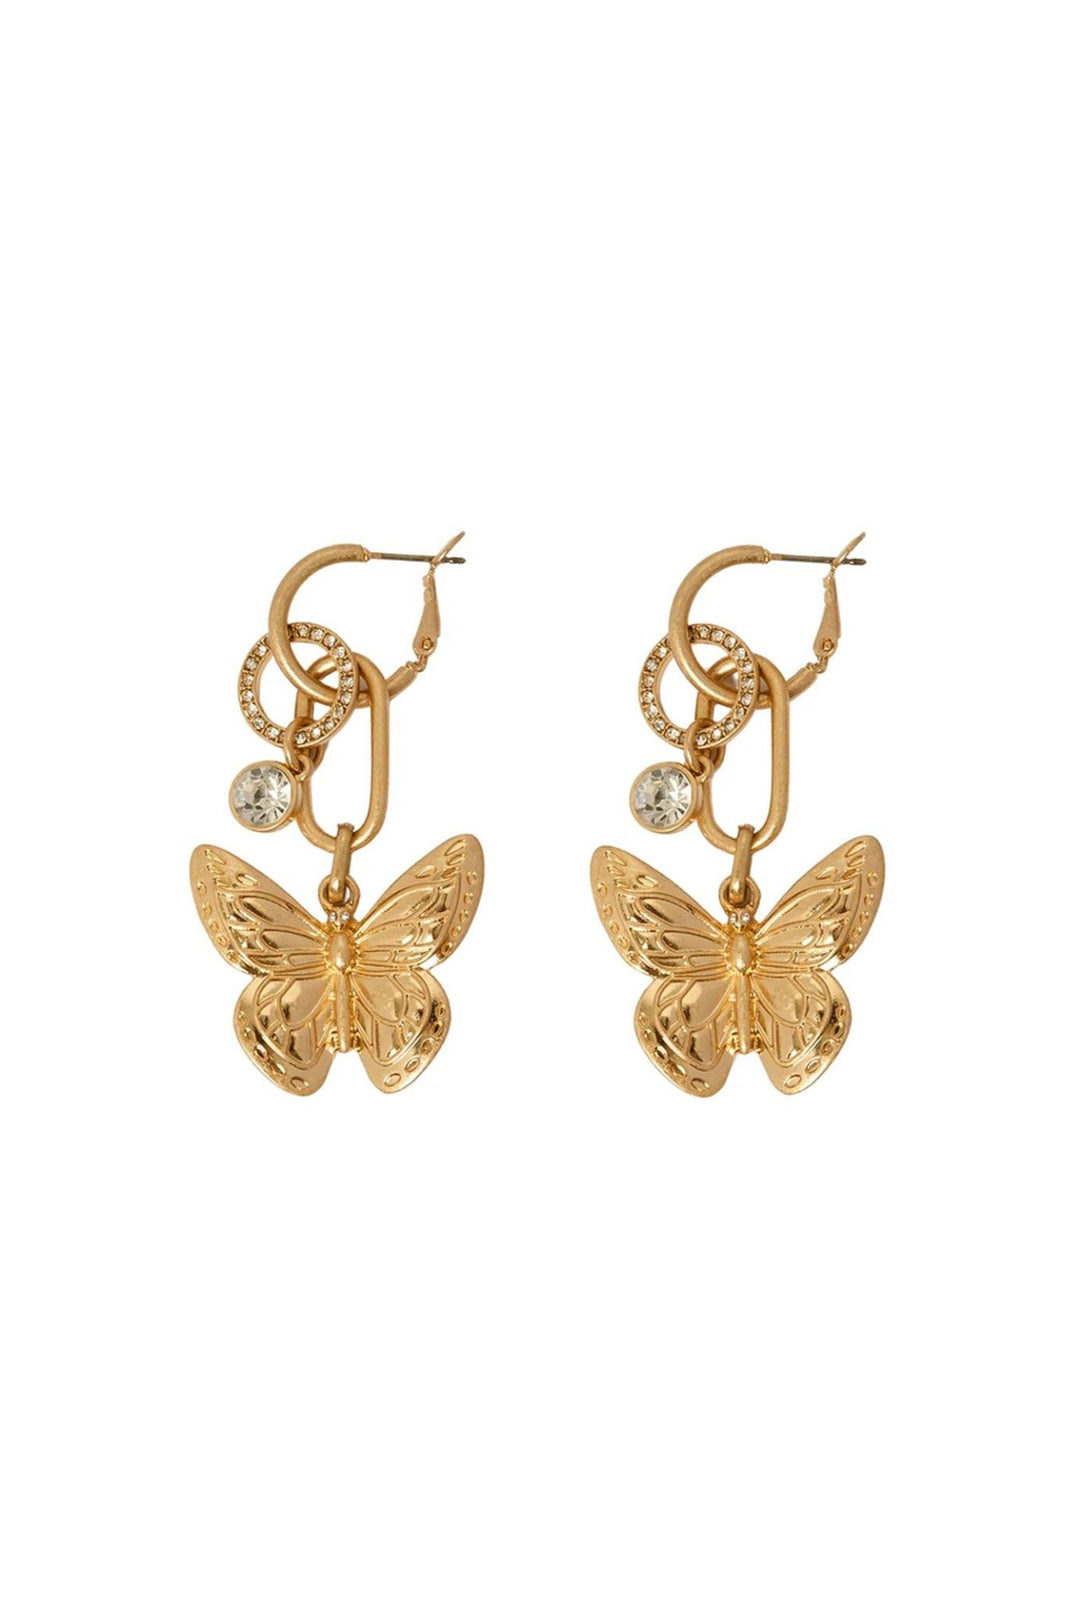 Bibi Bijoux Gold Serene Wings Interchangeable Earrings